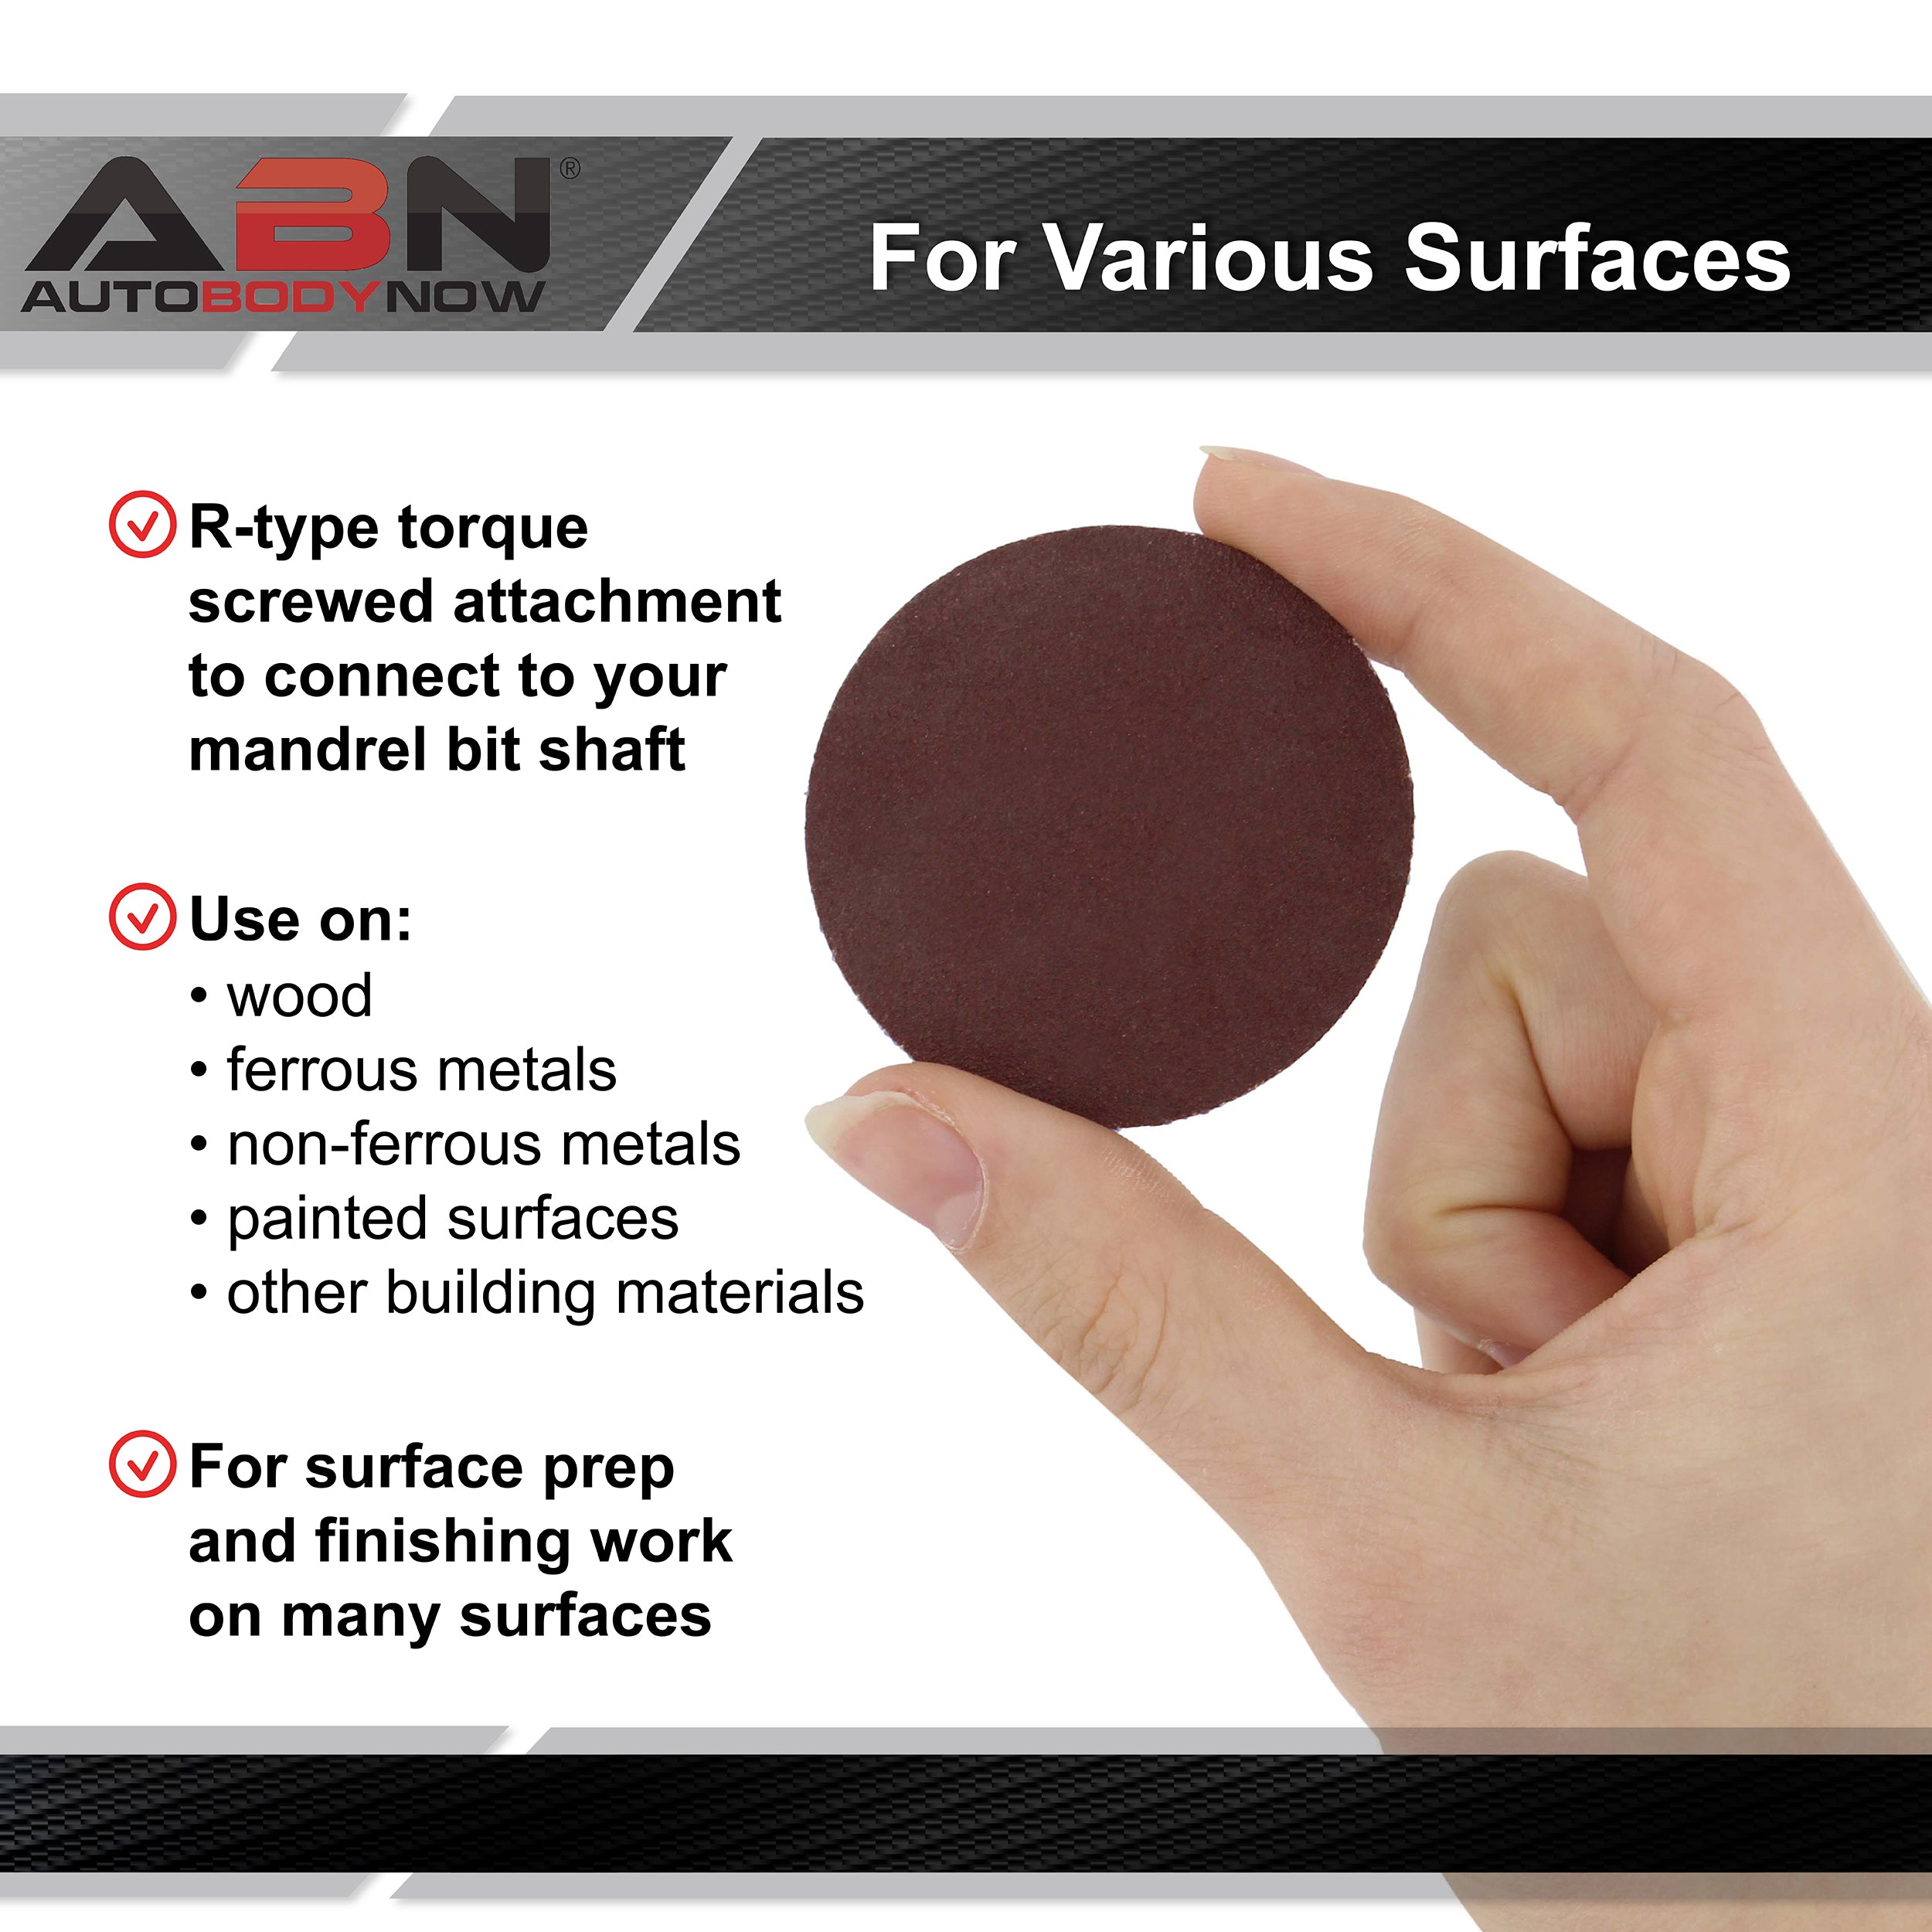 Aluminum Oxide Sandpaper Disc 50pk - 2in 120 Grit Sanding Disc Set